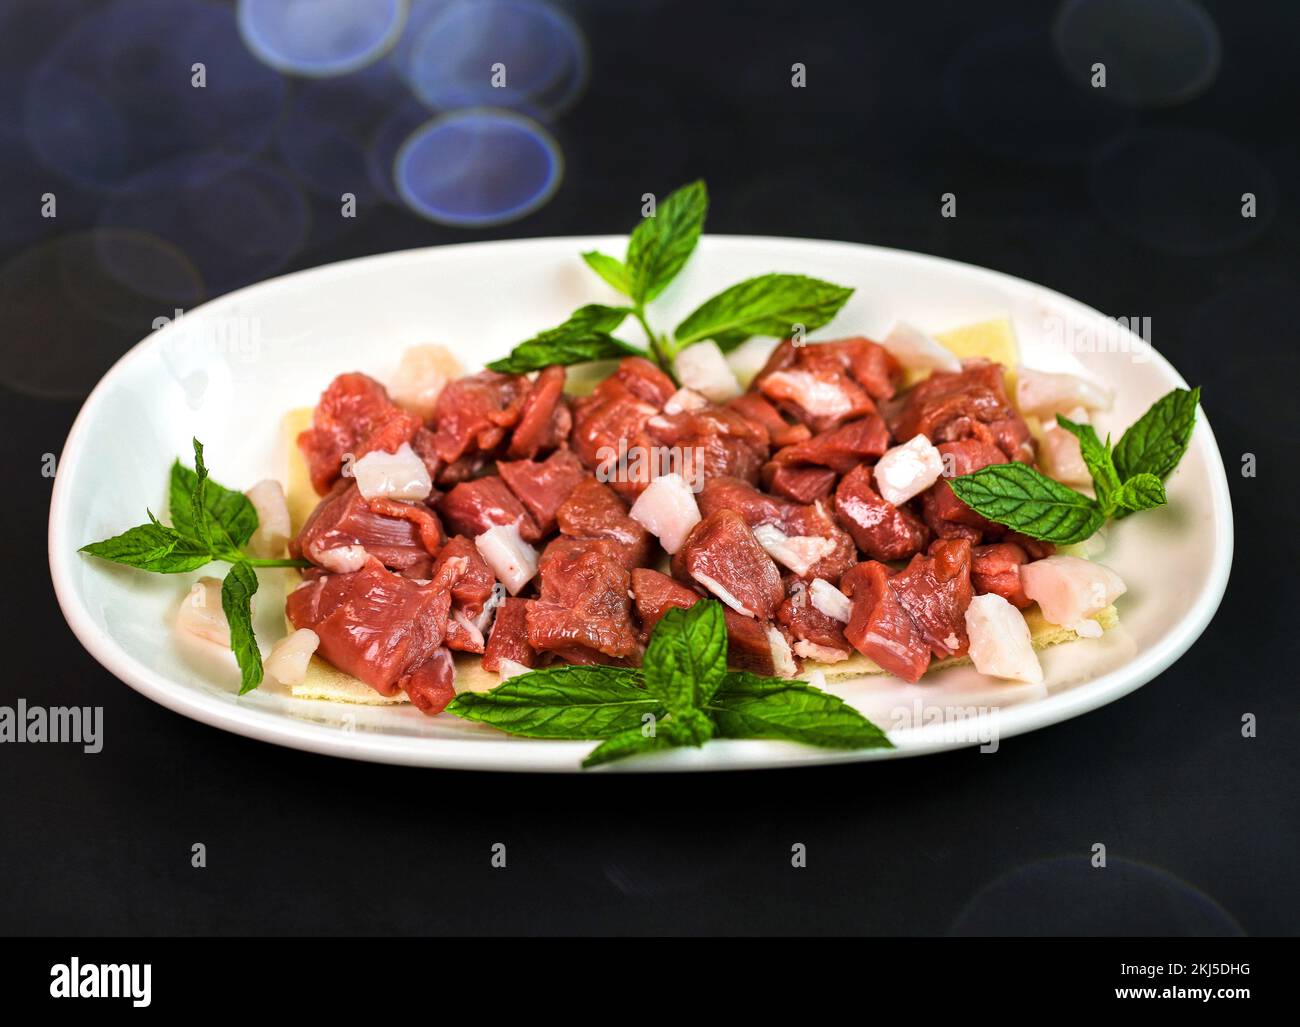 Immagini di alta qualità del cibo arabo libanese Foto Stock